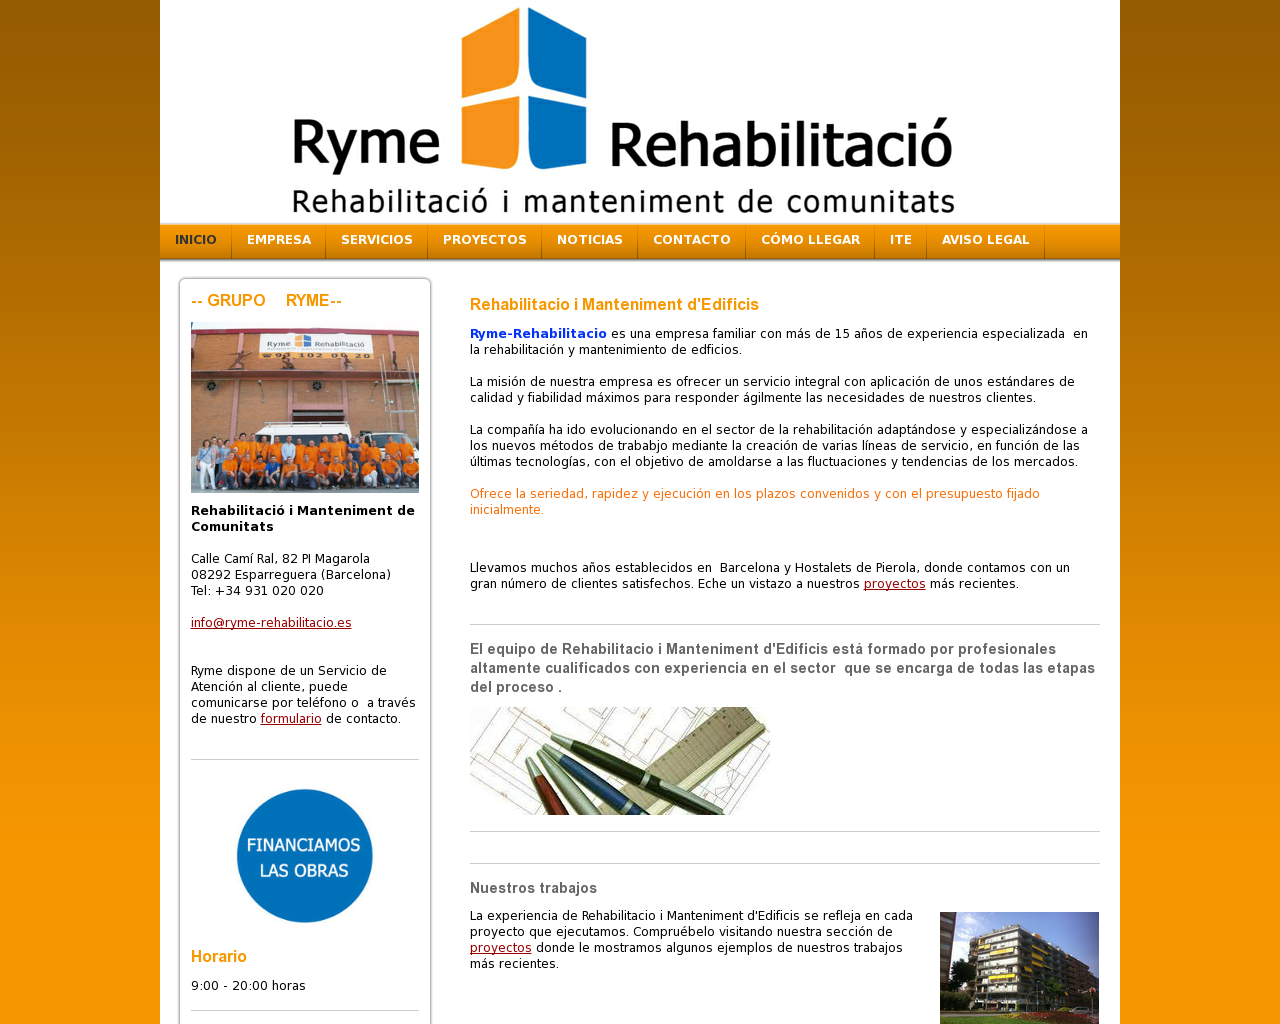 El sitio de la imagen ryme-rehabilitacio.es en 1280x1024